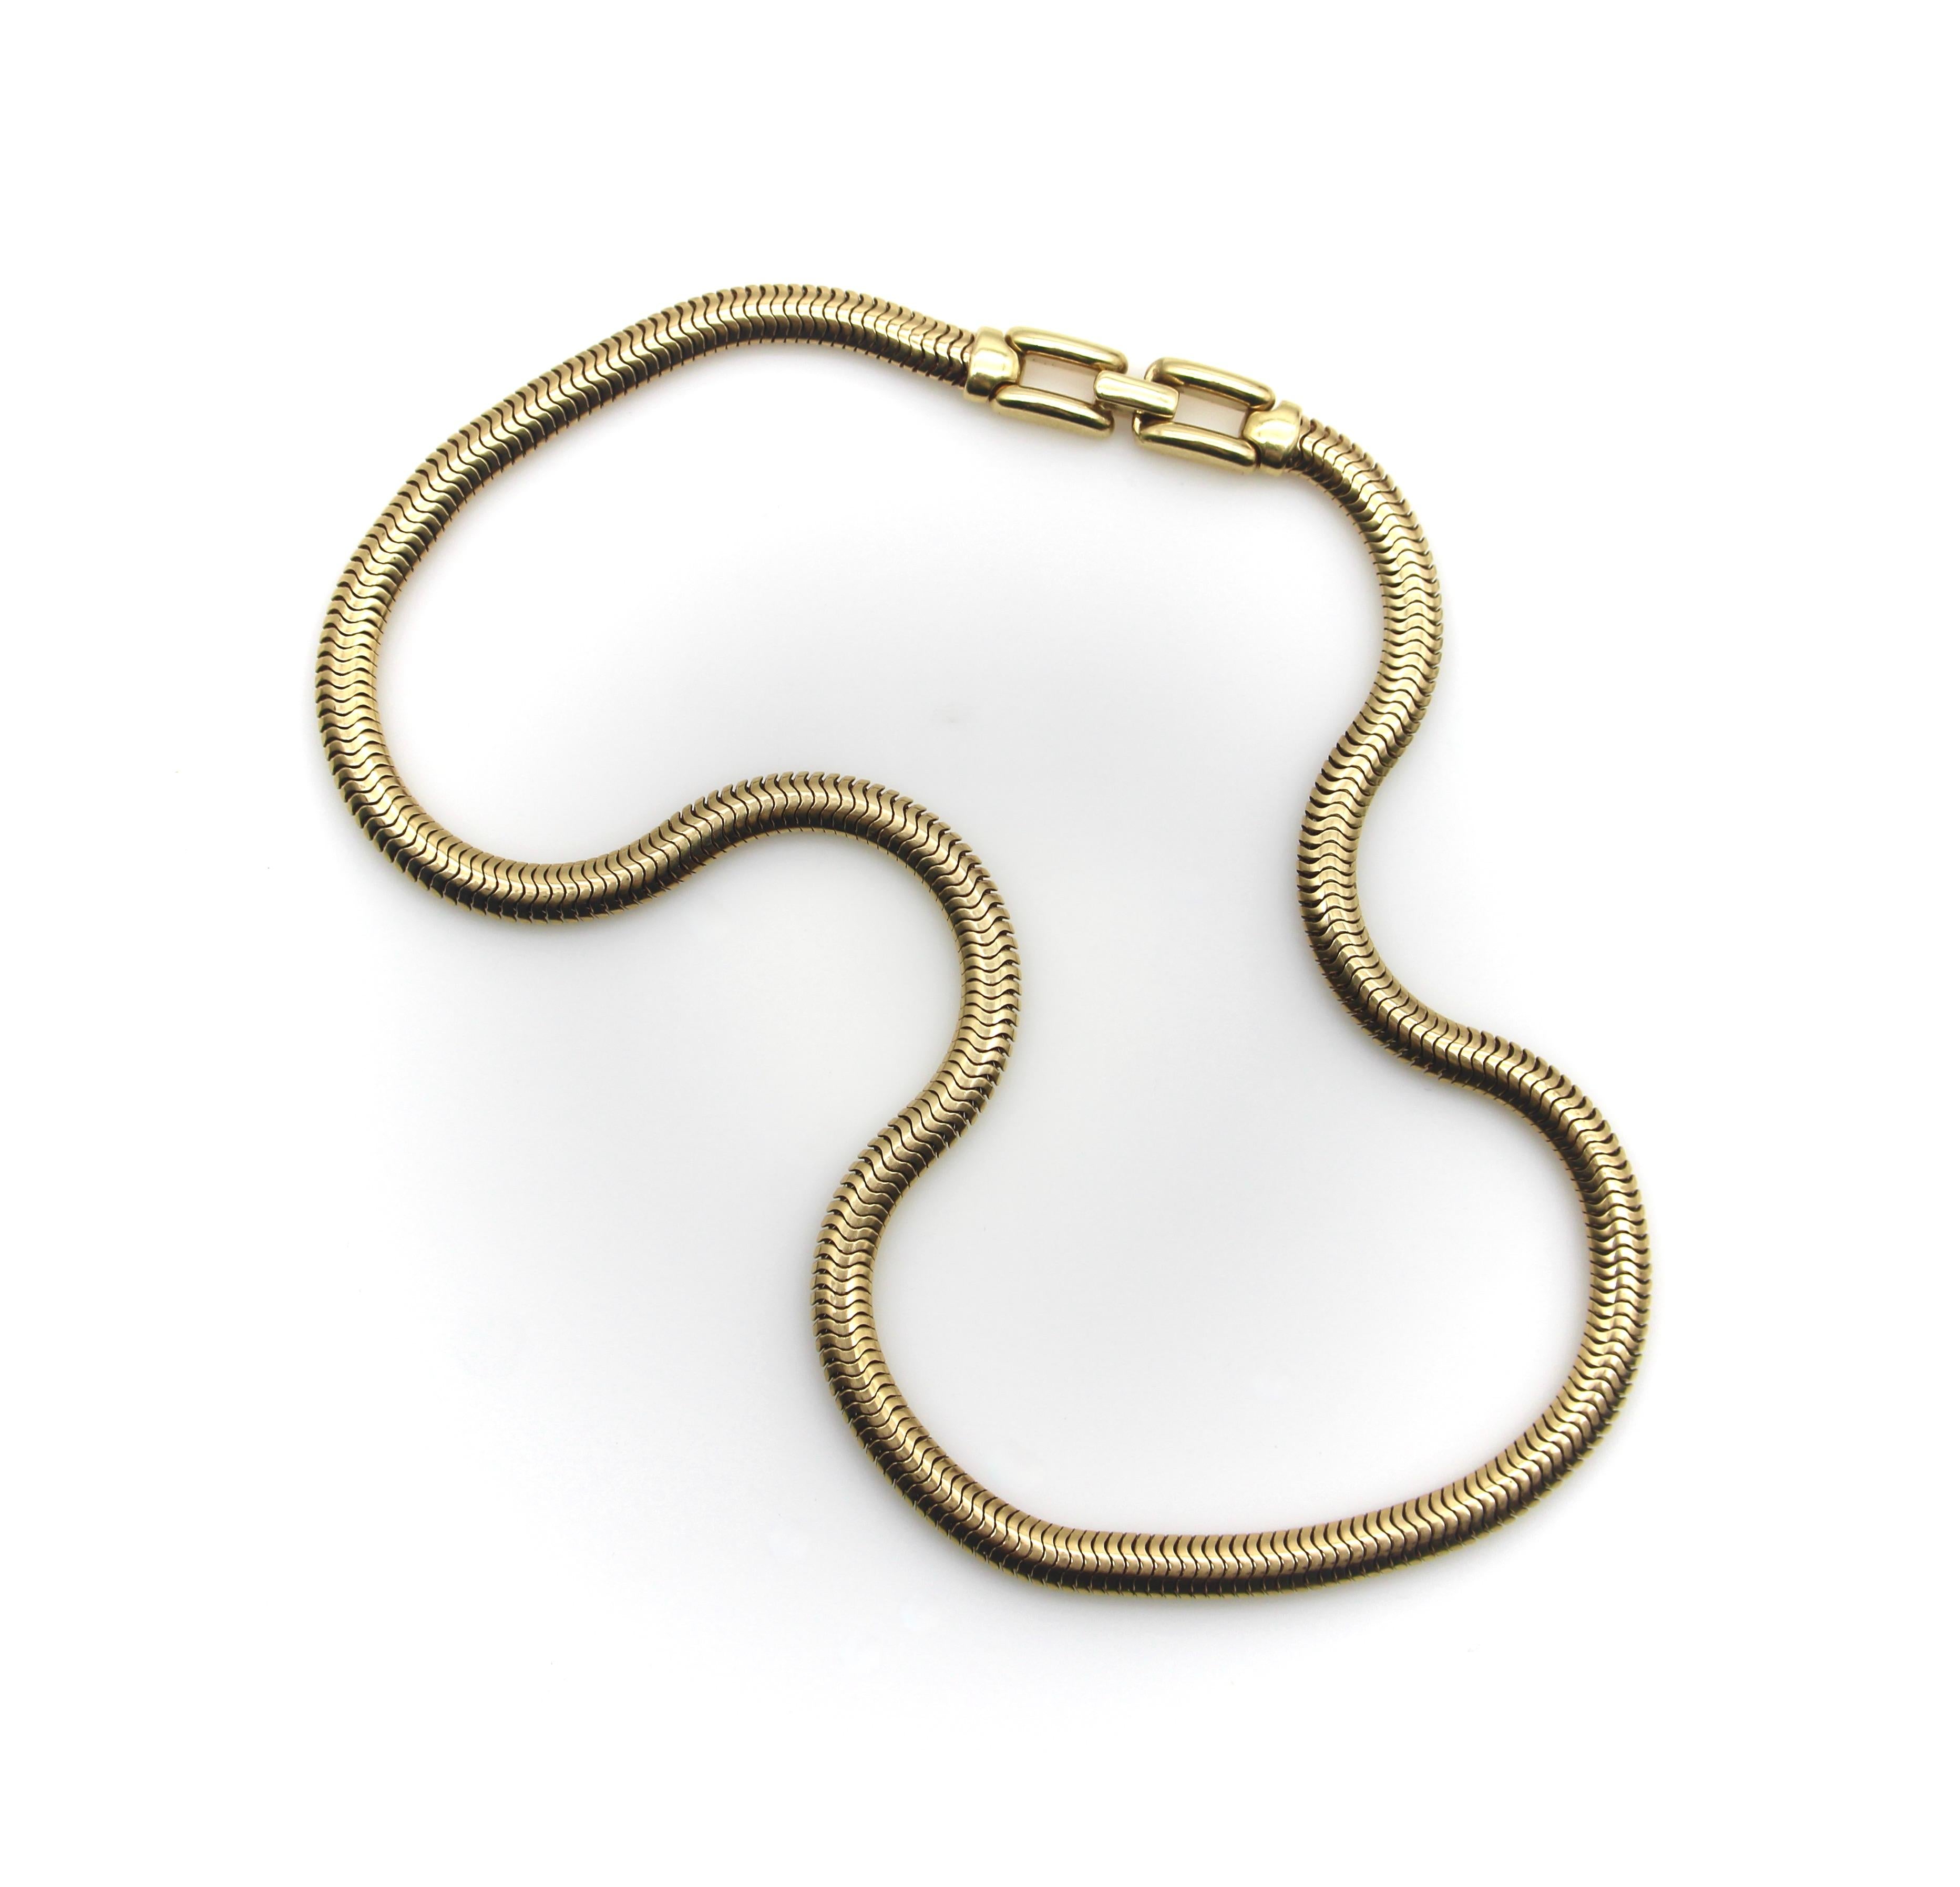 Diese Vintage-Schlangenkette aus wunderschönem 14-karätigem Gold hat die perfekte Länge für ein verführerisches Kropfband. Mit einer Breite von 5 mm ist dies eine wunderbar dicke Kette mit großer Präsenz am Hals. Er eignet sich perfekt als